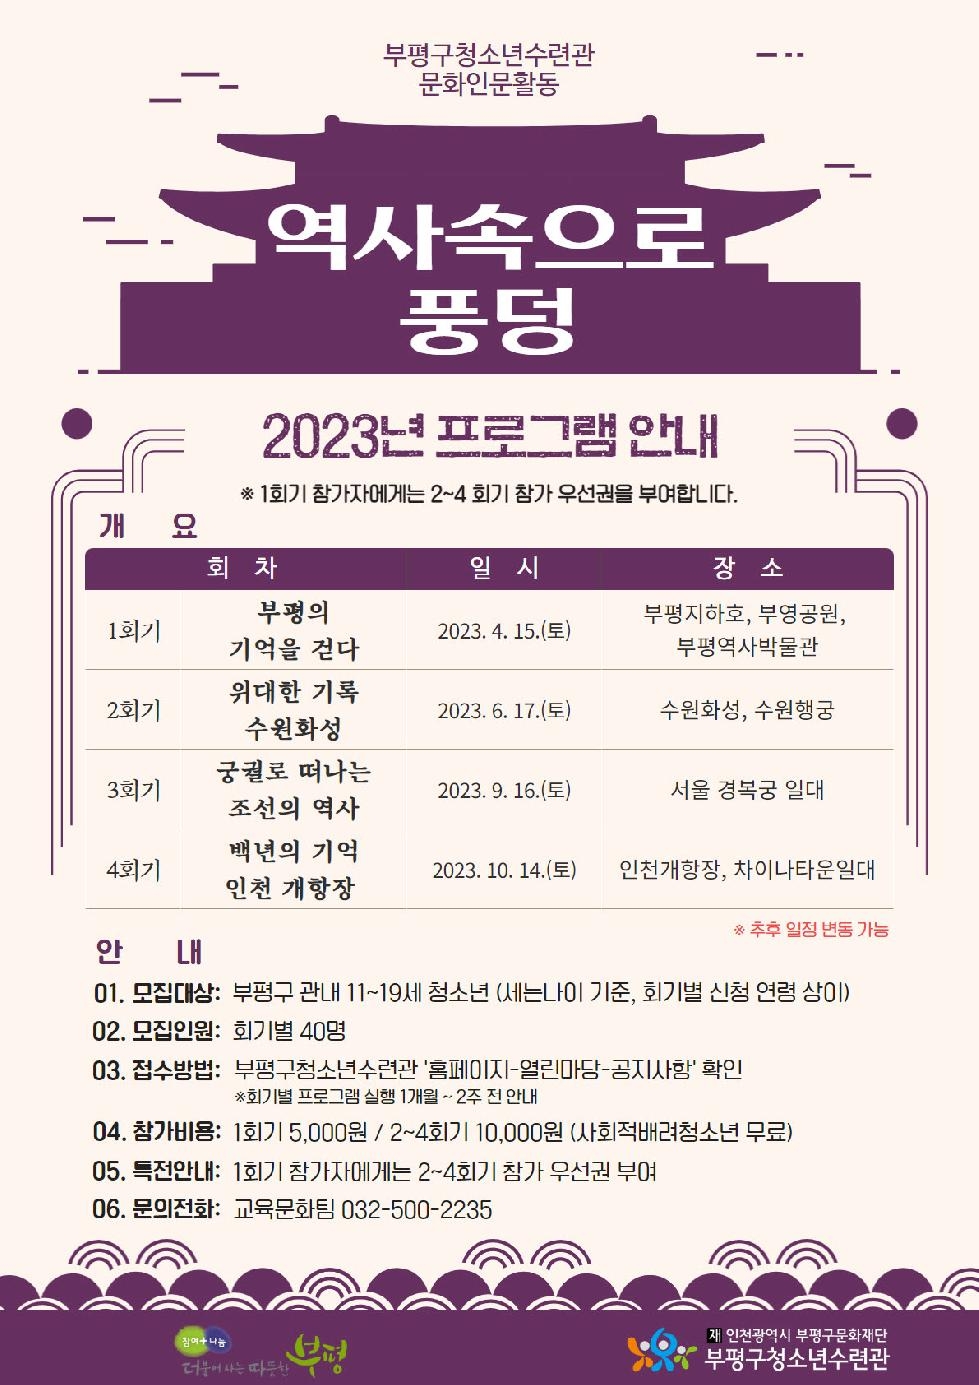 인천 부평구 청소년수련관, ‘역사속으로 풍덩’ 참여자 모집